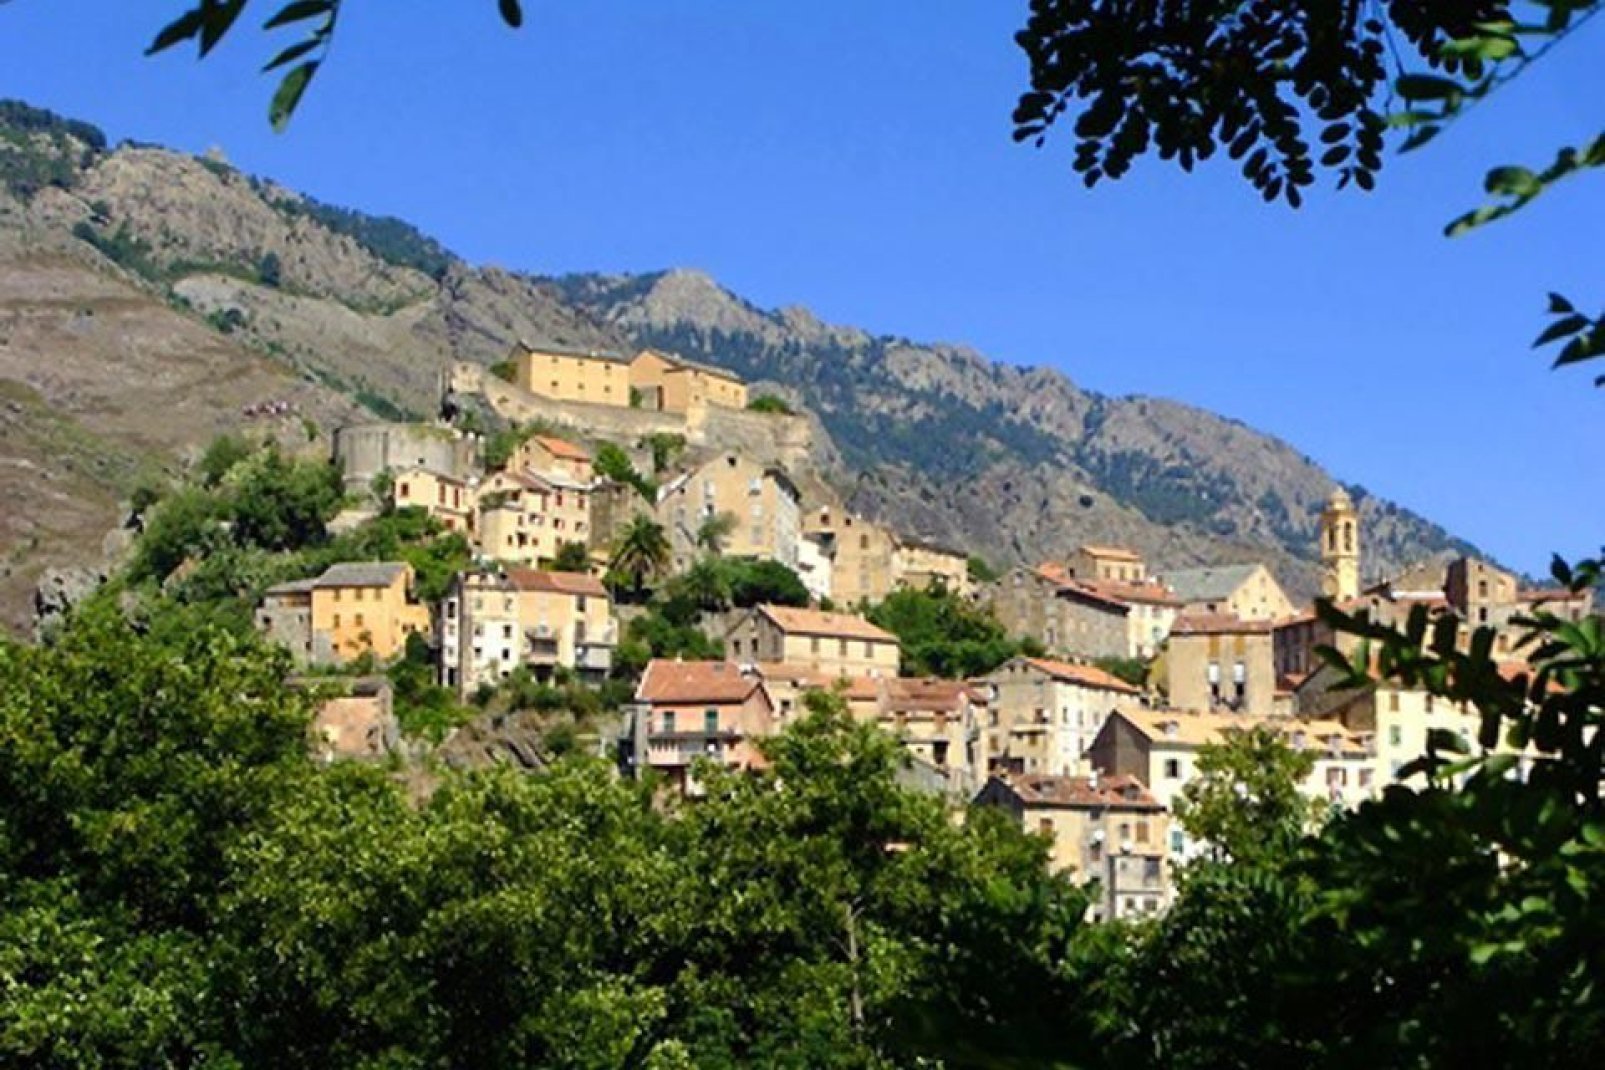 Corte si trova al confine tra la Corsica settentrionale e meridionale.